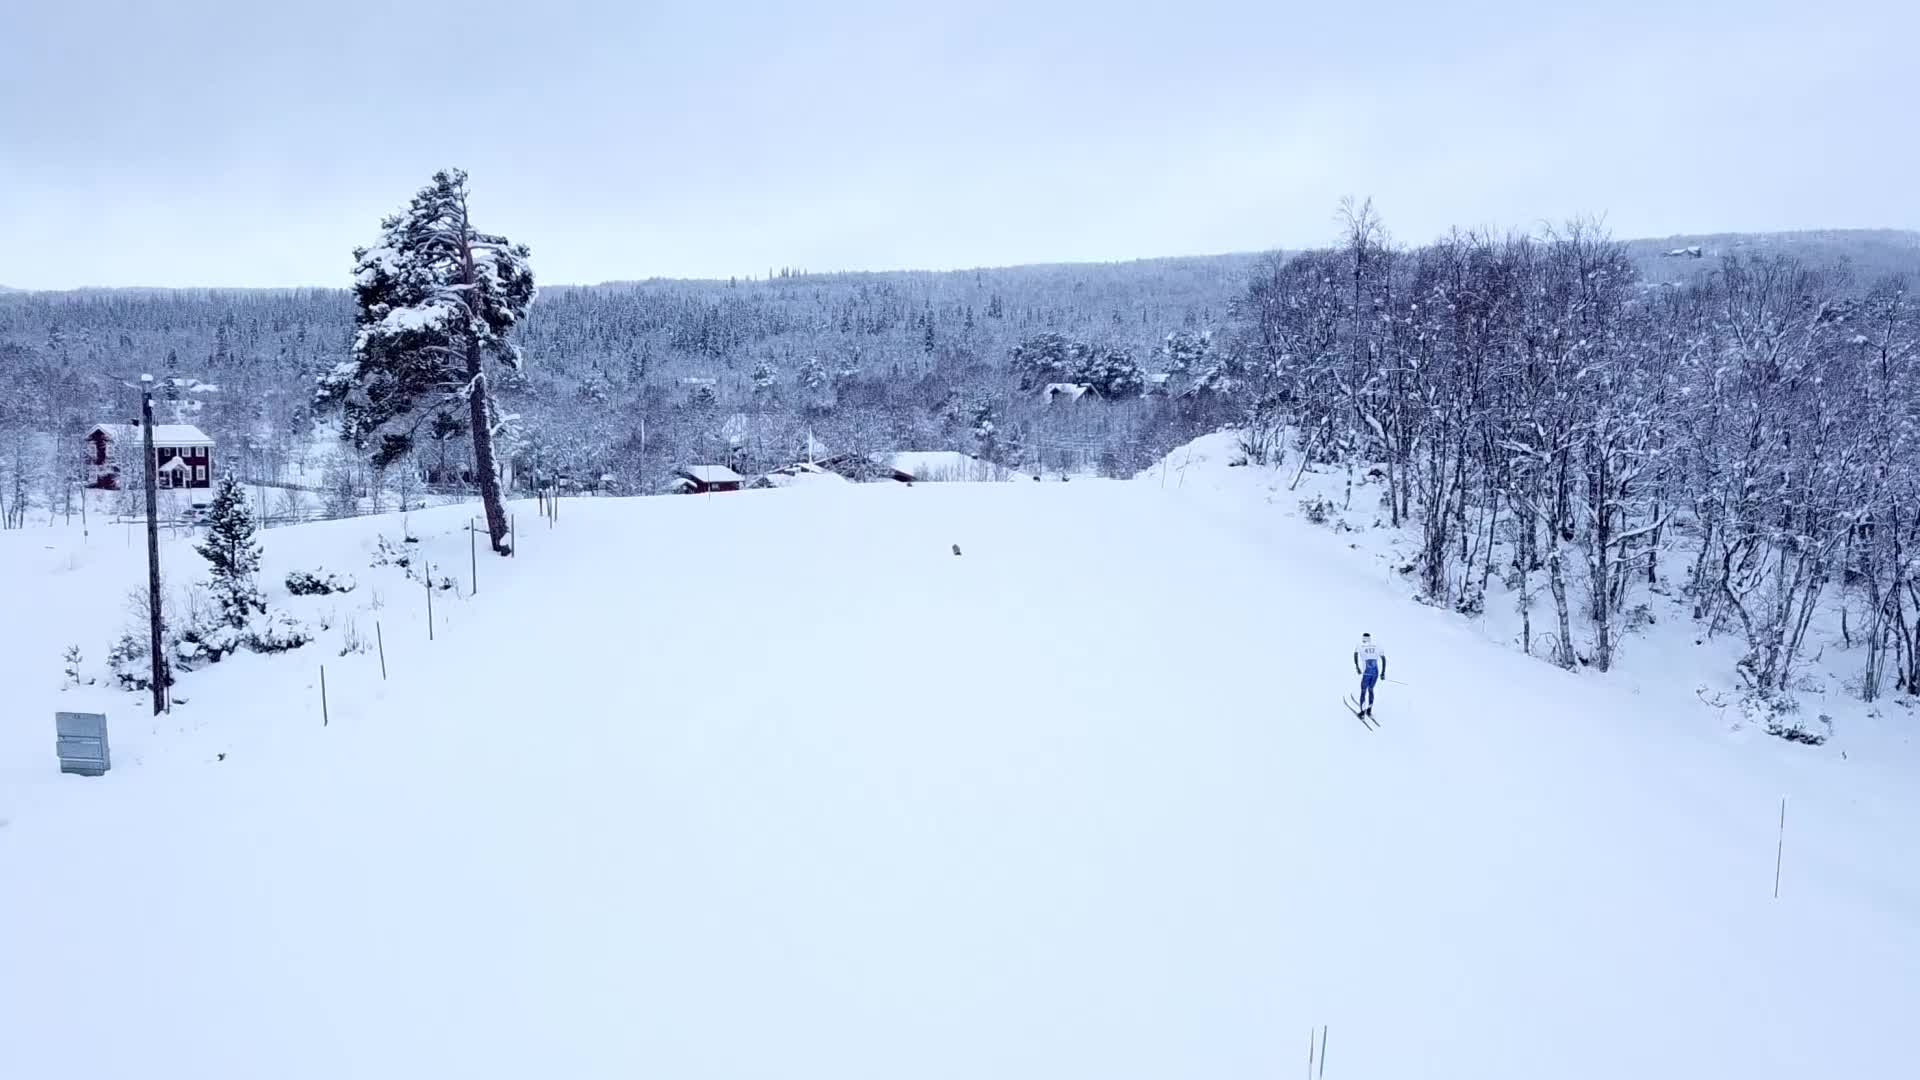 A ski slope in winter landscape